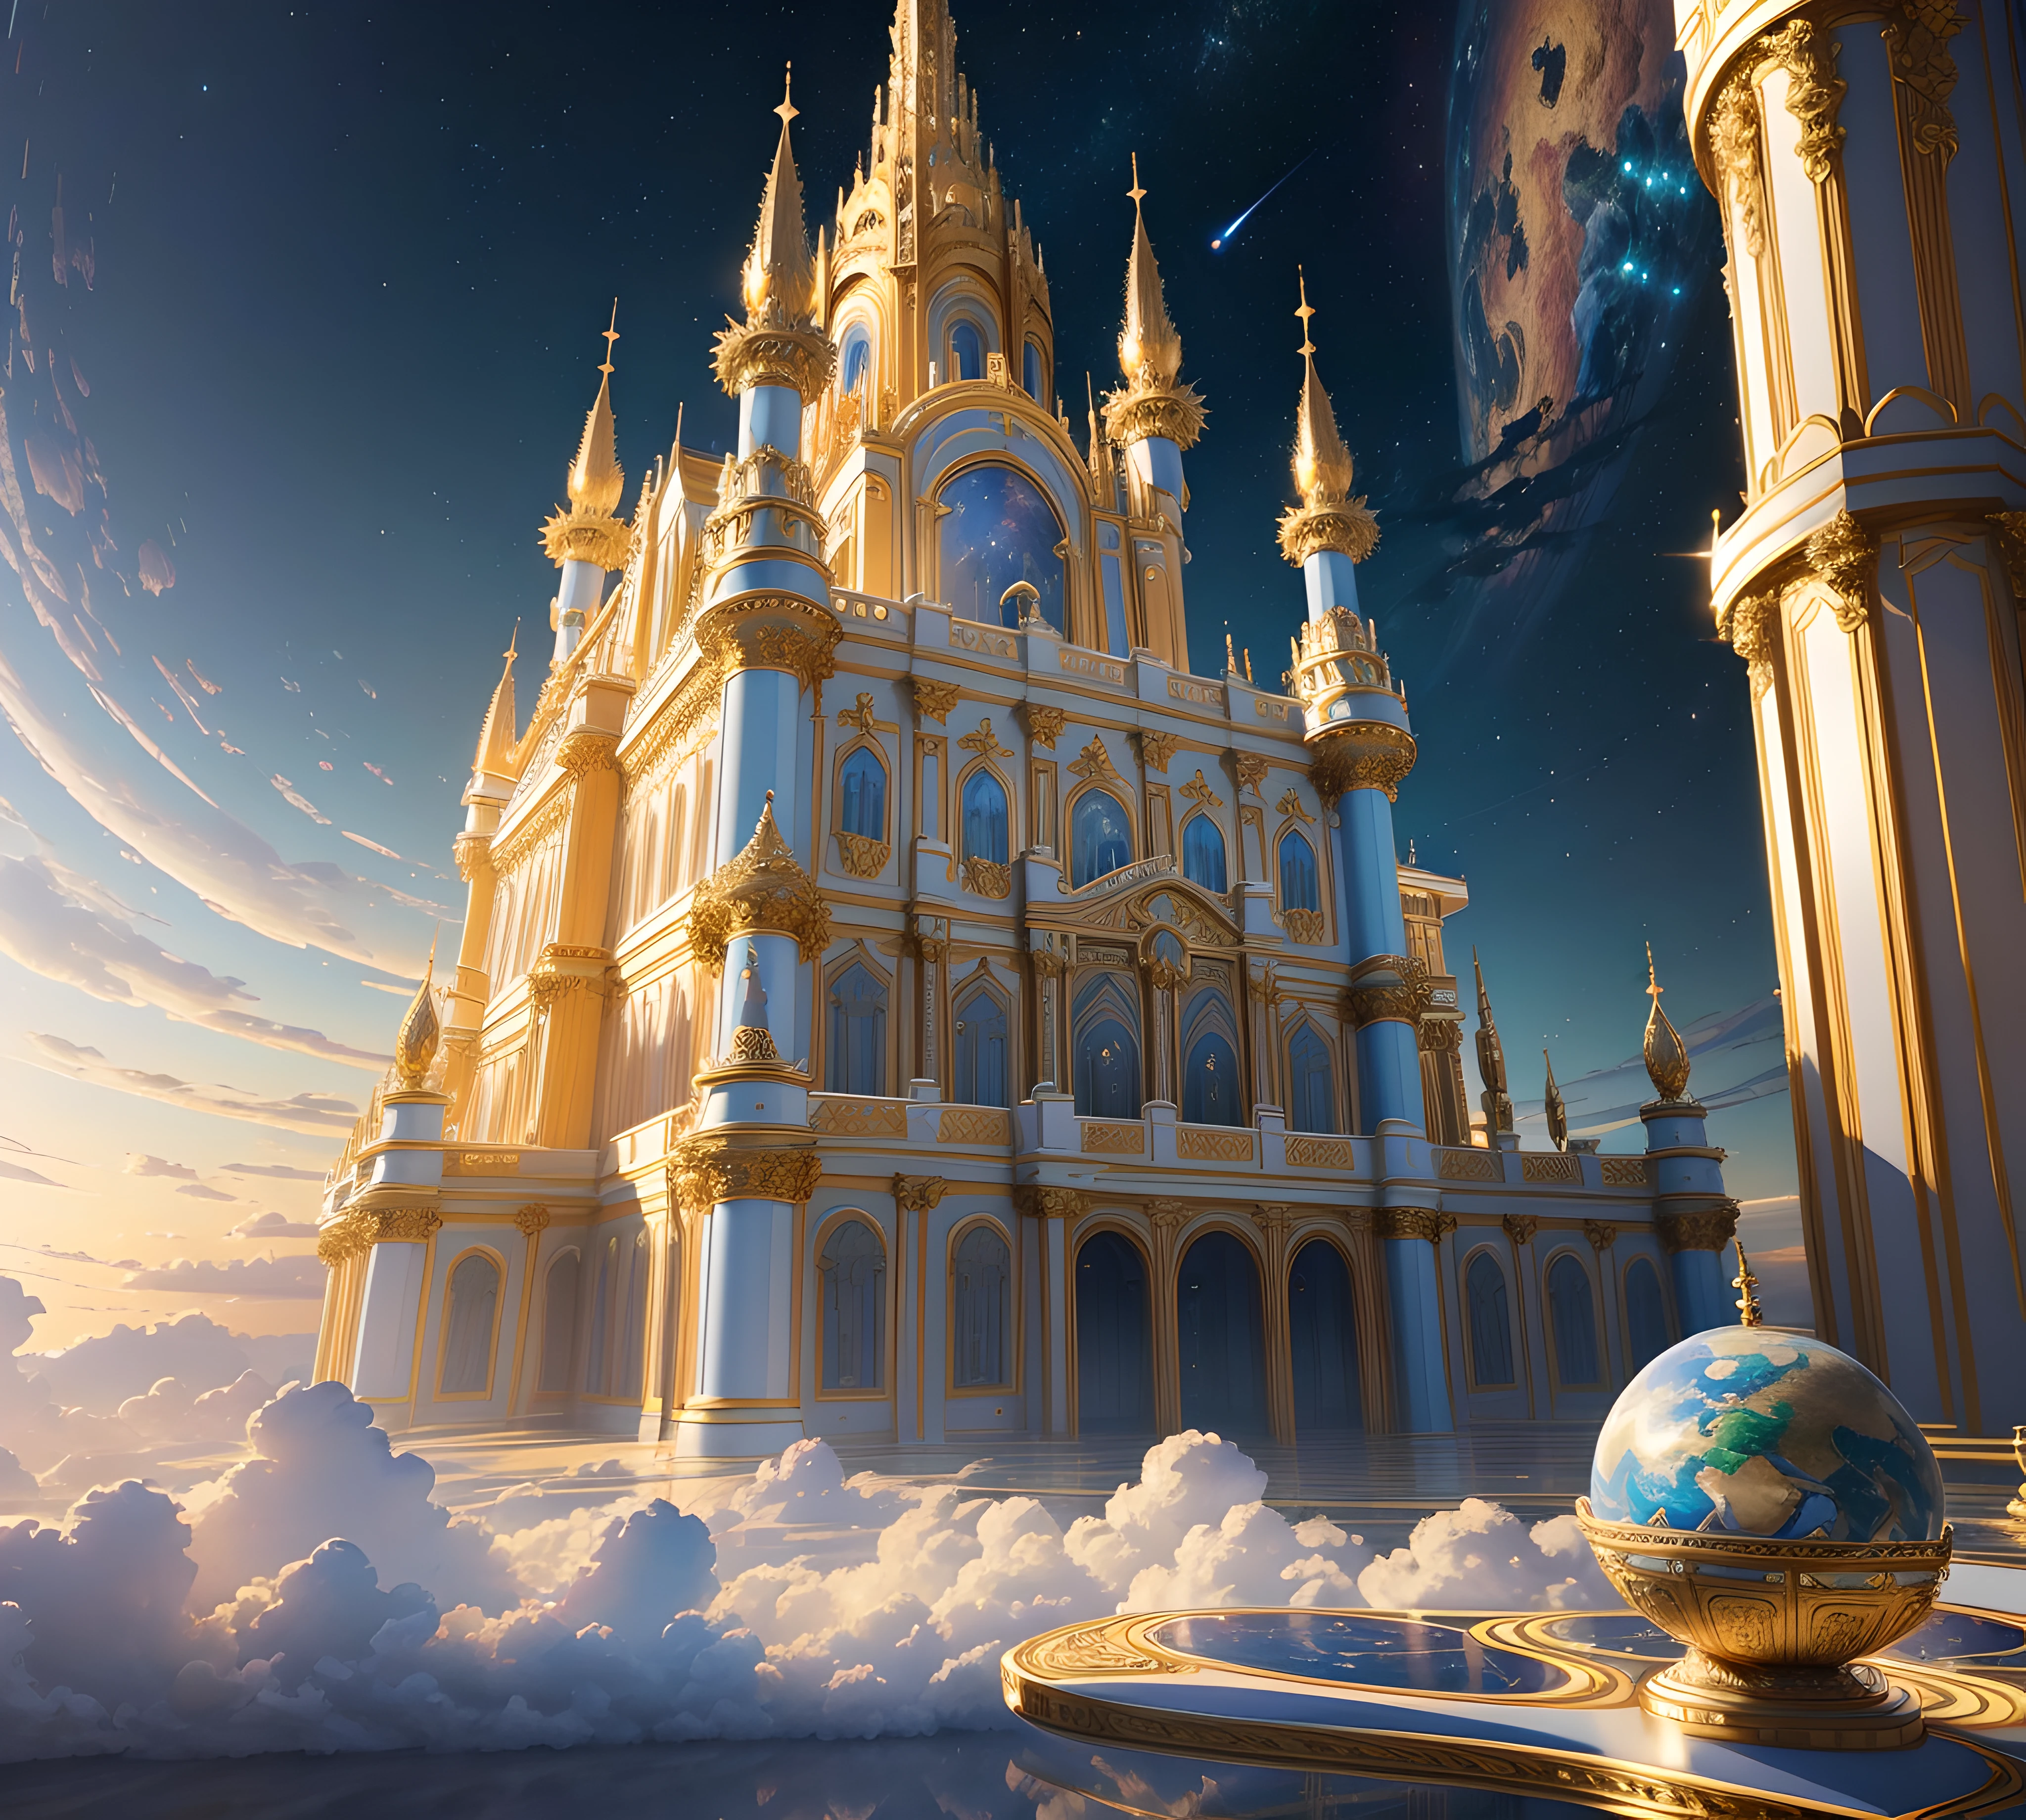 Лучшее качество, шедевр, фотореалистичный, (CGI-изображения высокого разрешения 8k), create a architectural шедевр of an opulent celestial castle floating in the sky, цветовая гамма неземная, голографическая, светоотражающая, бледно-голубая., золото, и синий мрамор, богато украшенный, высокое разрешение, 3D-rendered шедевр of digital art, небесный, мечтательное мерцание